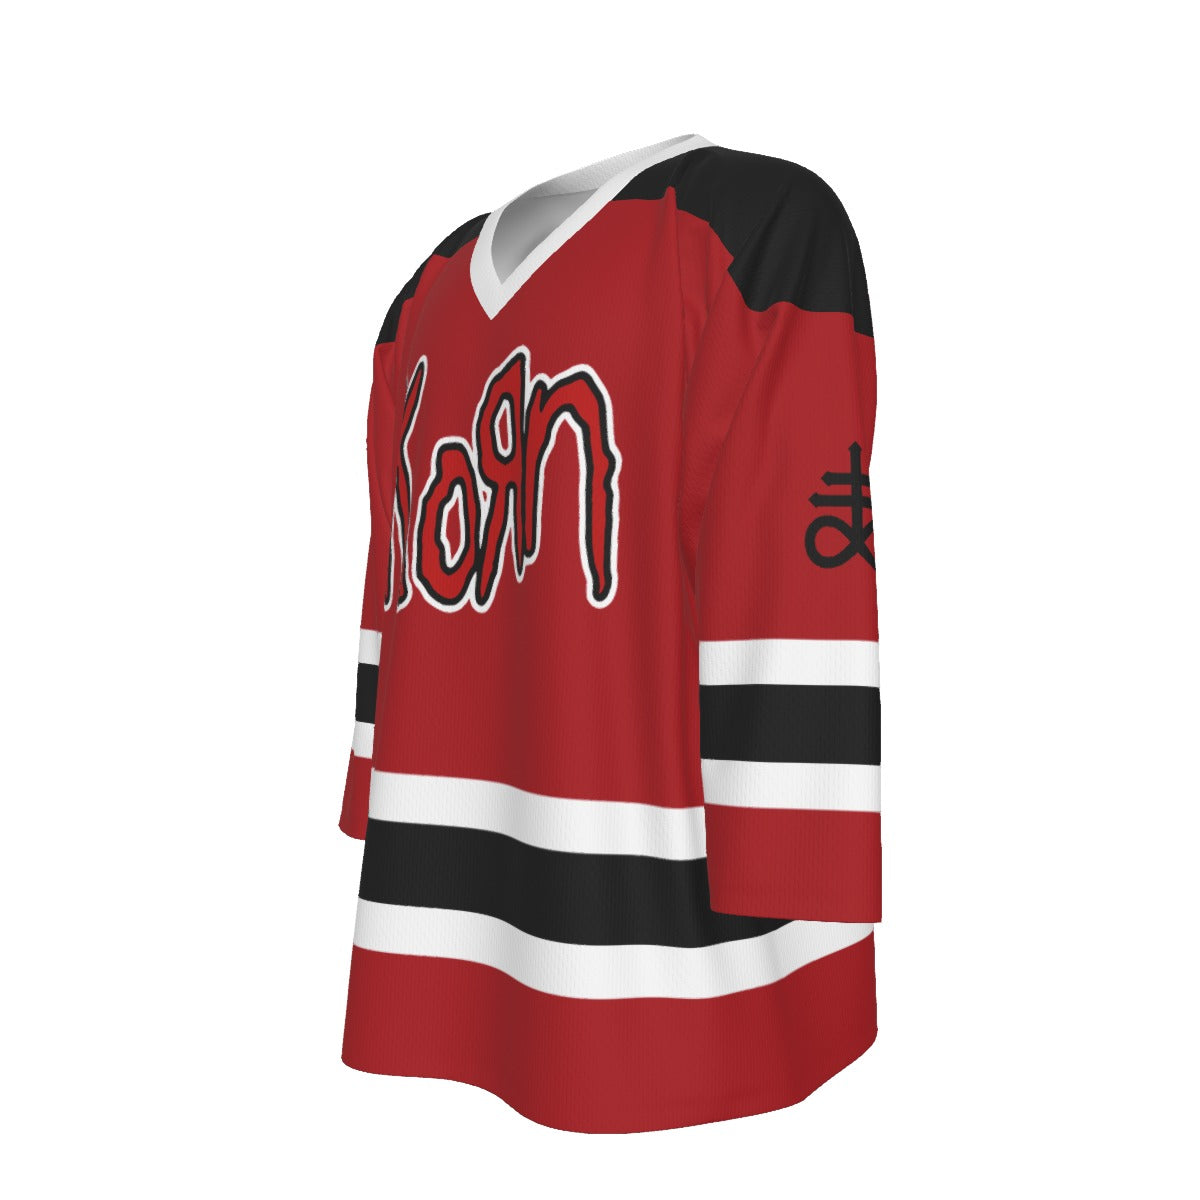 Korn Unisex V-neck Hockey Jersey